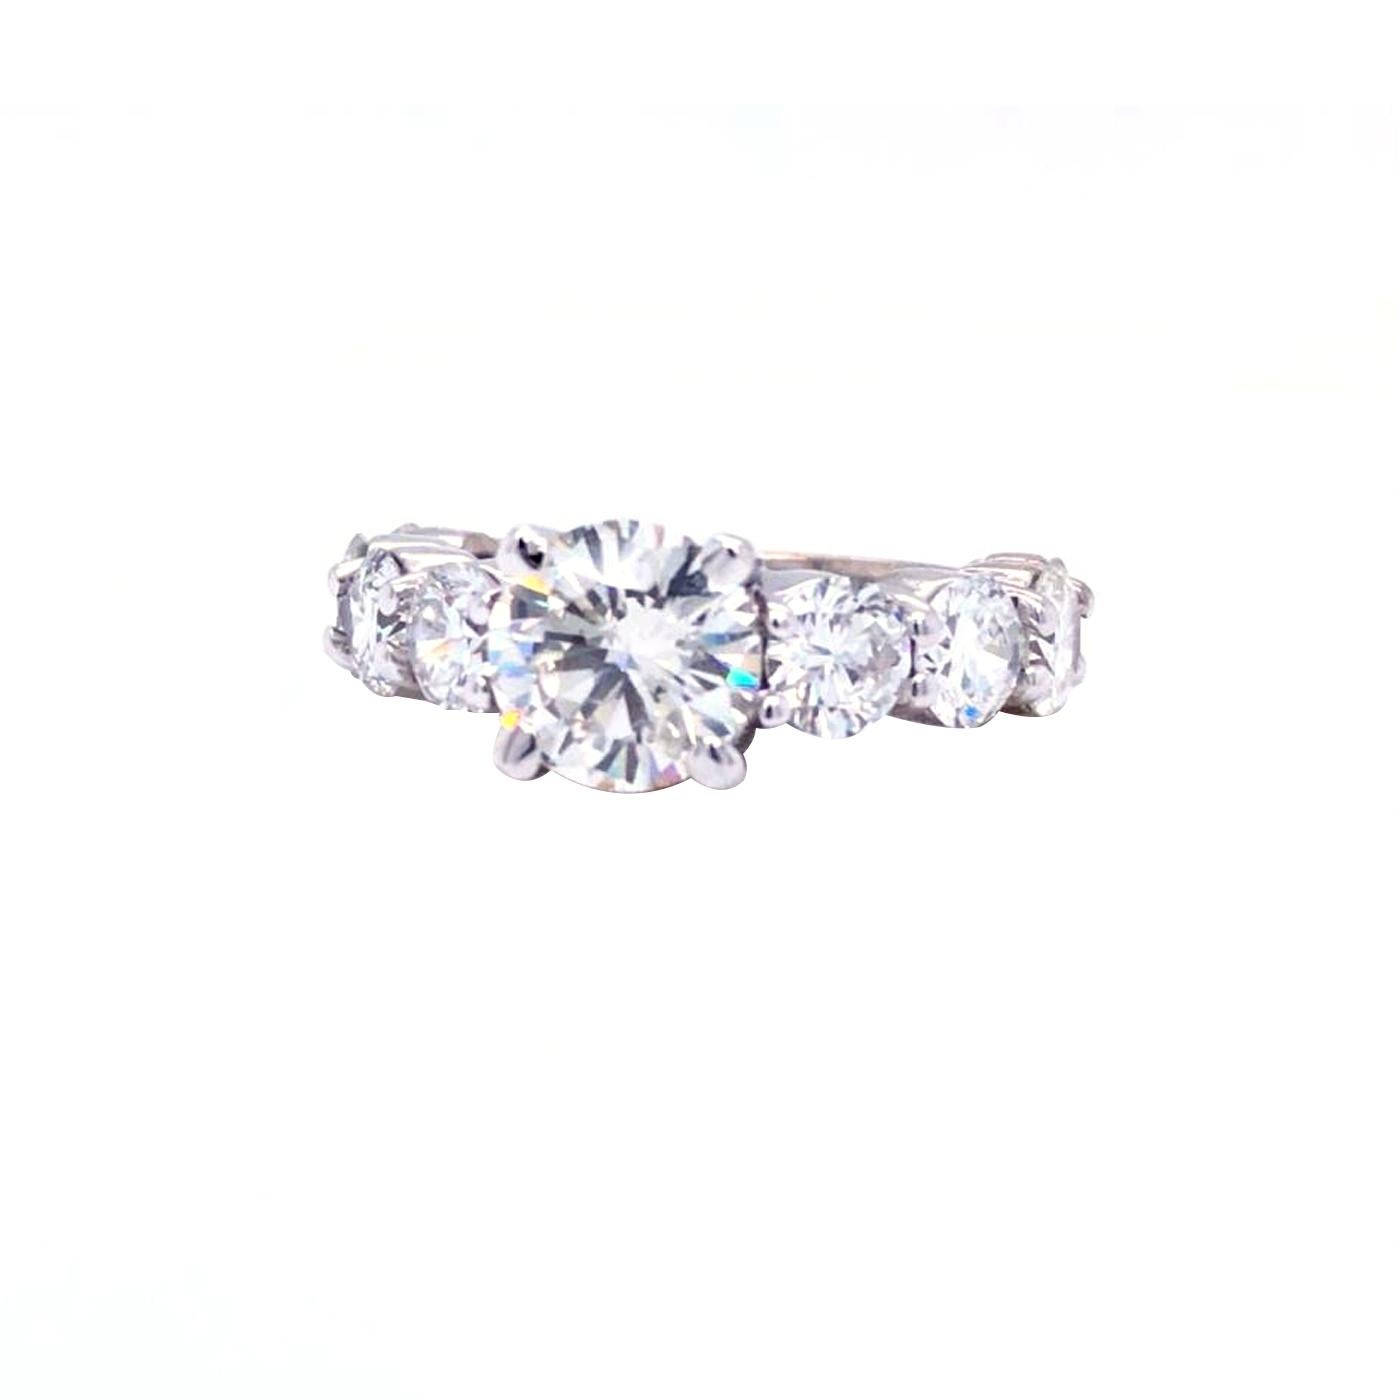 Dieser Ring verfügt über Round Cut Diamanten natürlichen Diamanten von H-I und G-F Farbe und VS2 und Si2 Klarheit. Mit einer Größe von 5,5 und dem eleganten Metall 14K Weißgold wird dieses fantastische Stück garantiert jahrzehntelang Freude